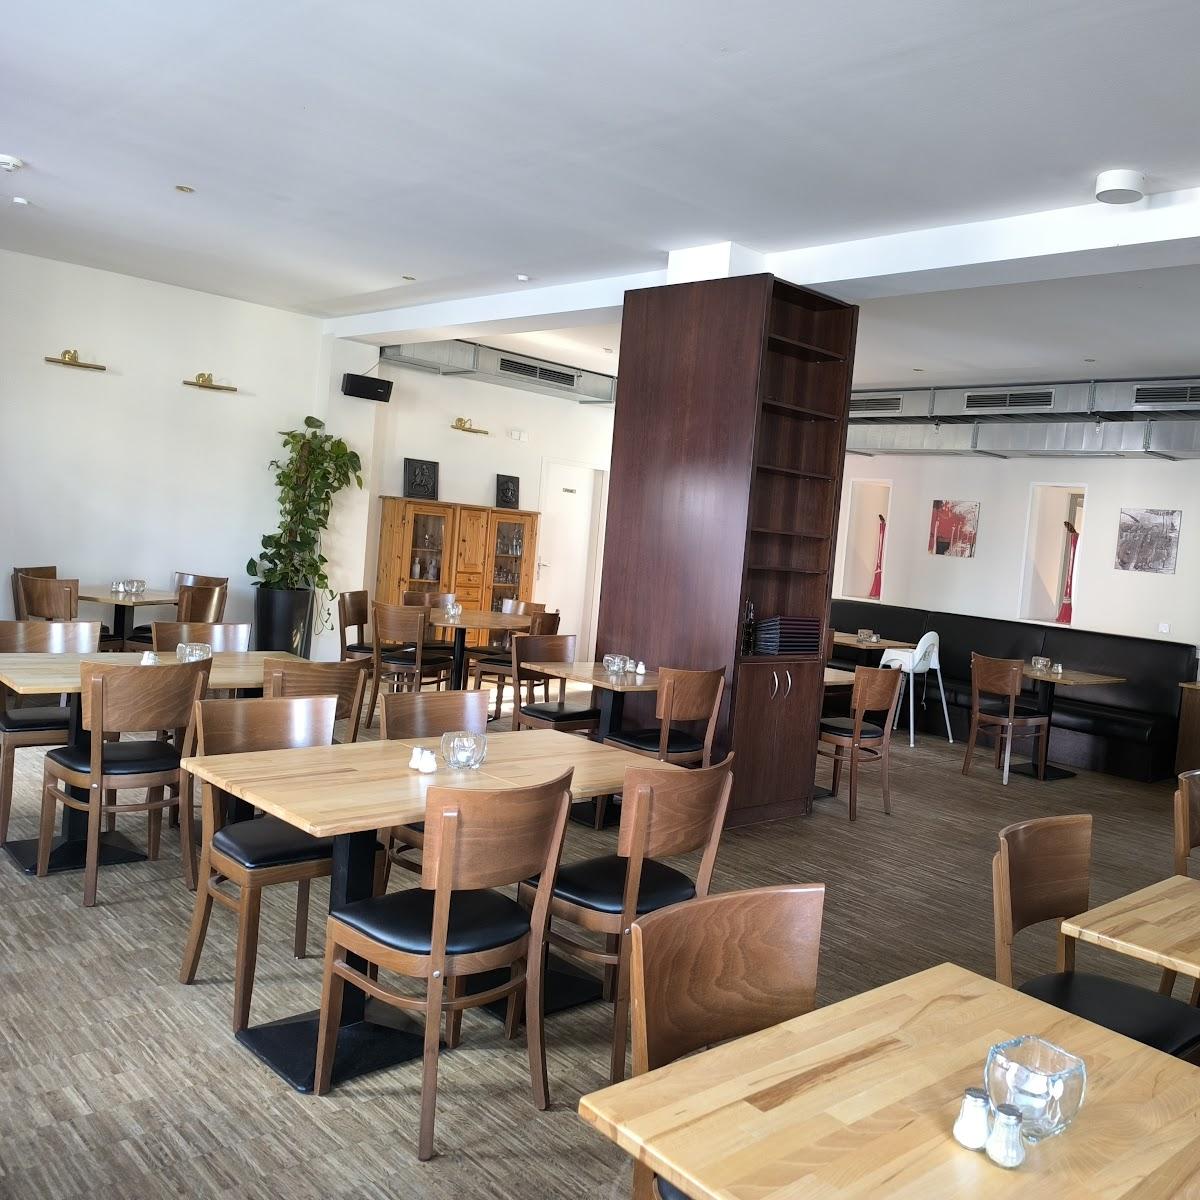 Restaurant "Velas Restaurant" in Teltow